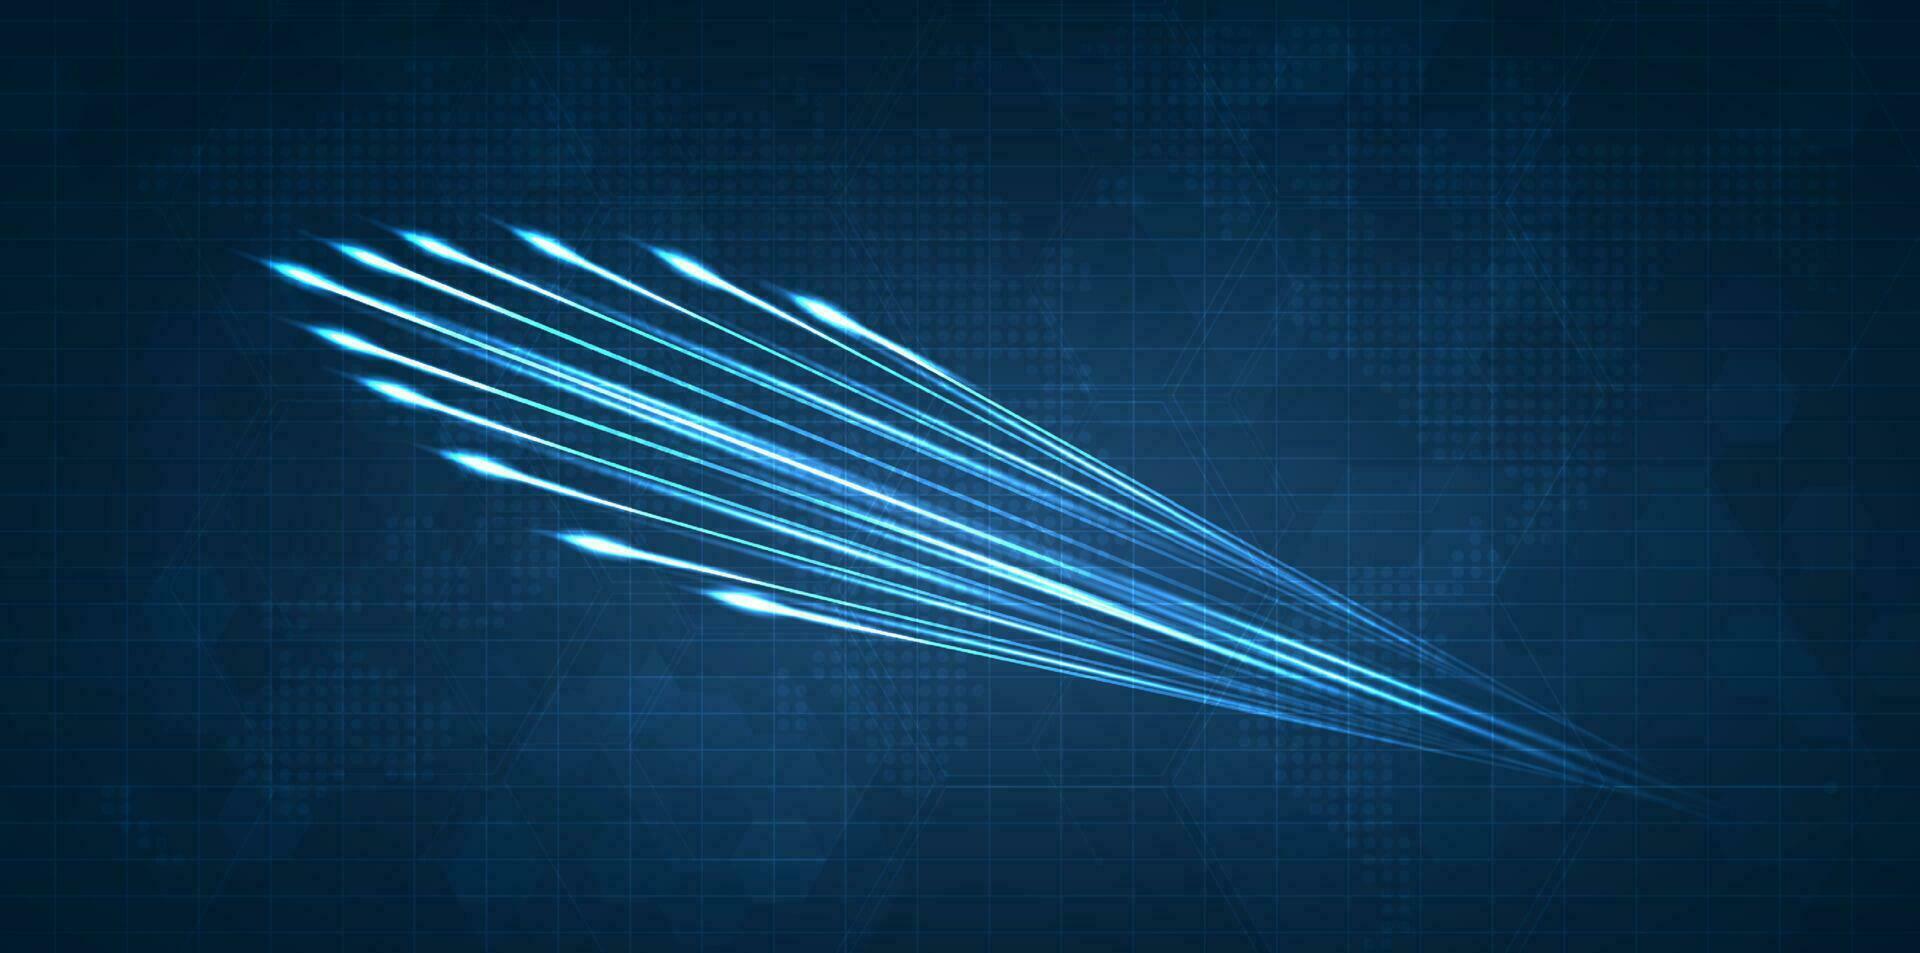 blå ljus strimma, fiber optisk, hastighet linje, trogen bakgrund för 5g eller 6g teknologi trådlös data överföring, hög hastighet internet i abstrakt. internet nätverk begrepp. vektor design.